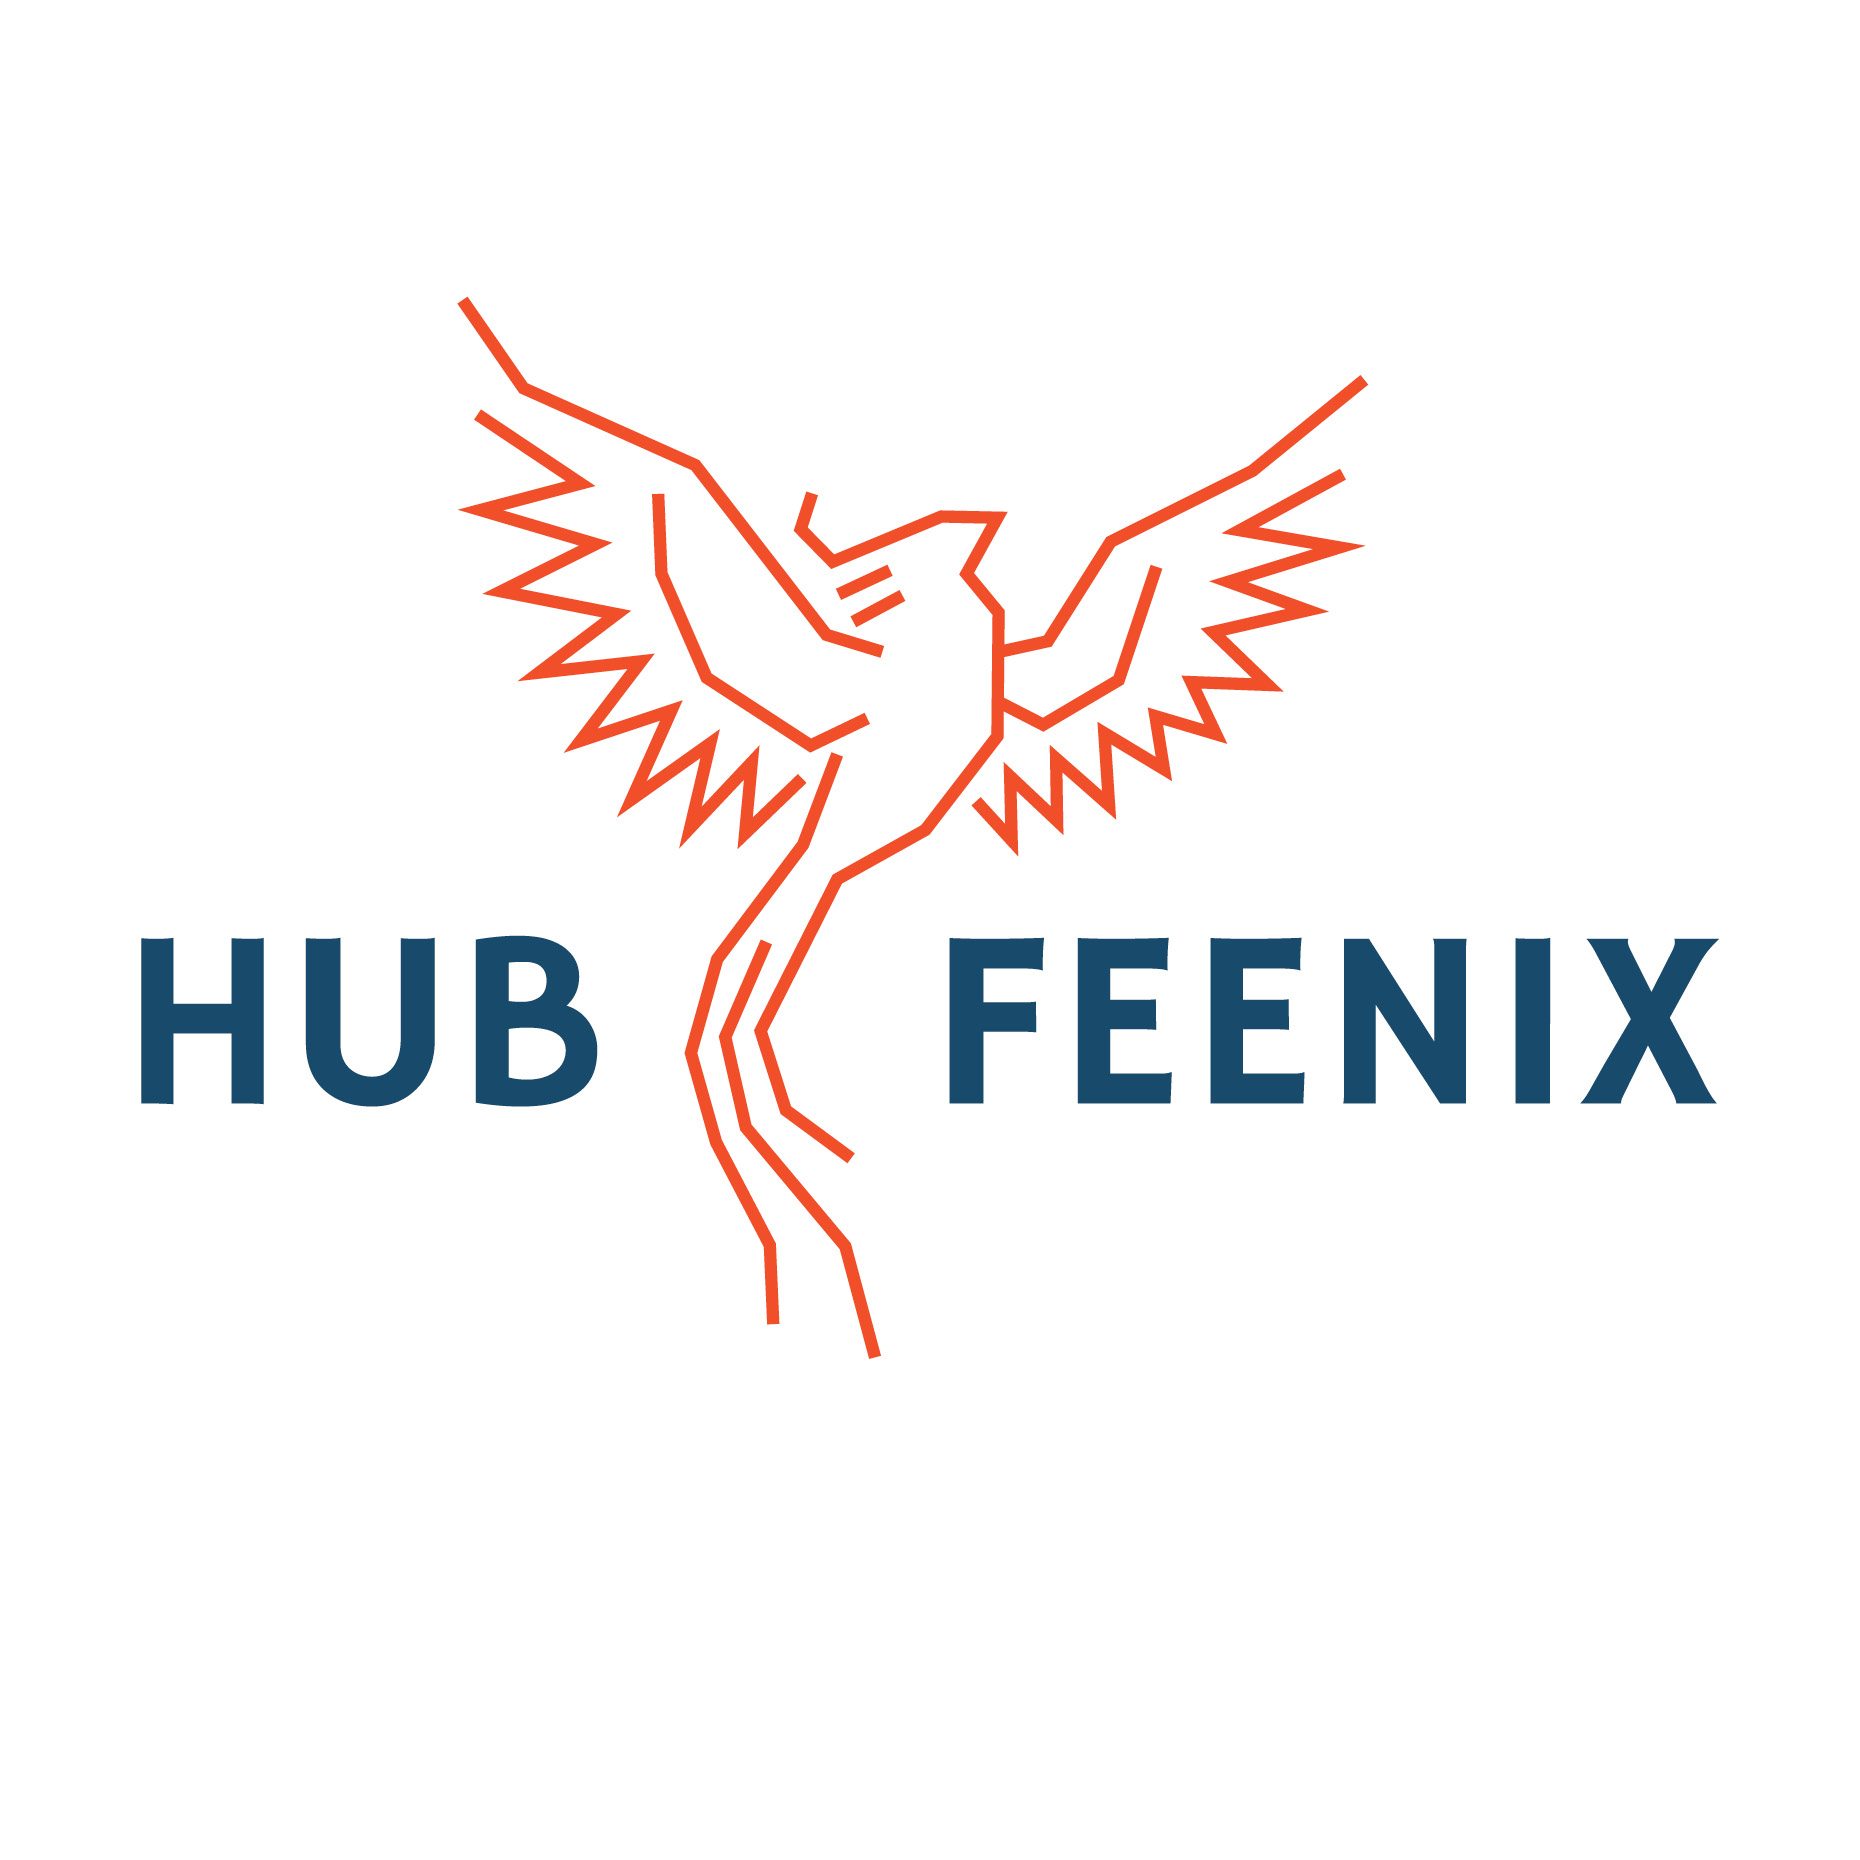 Hub Feenix